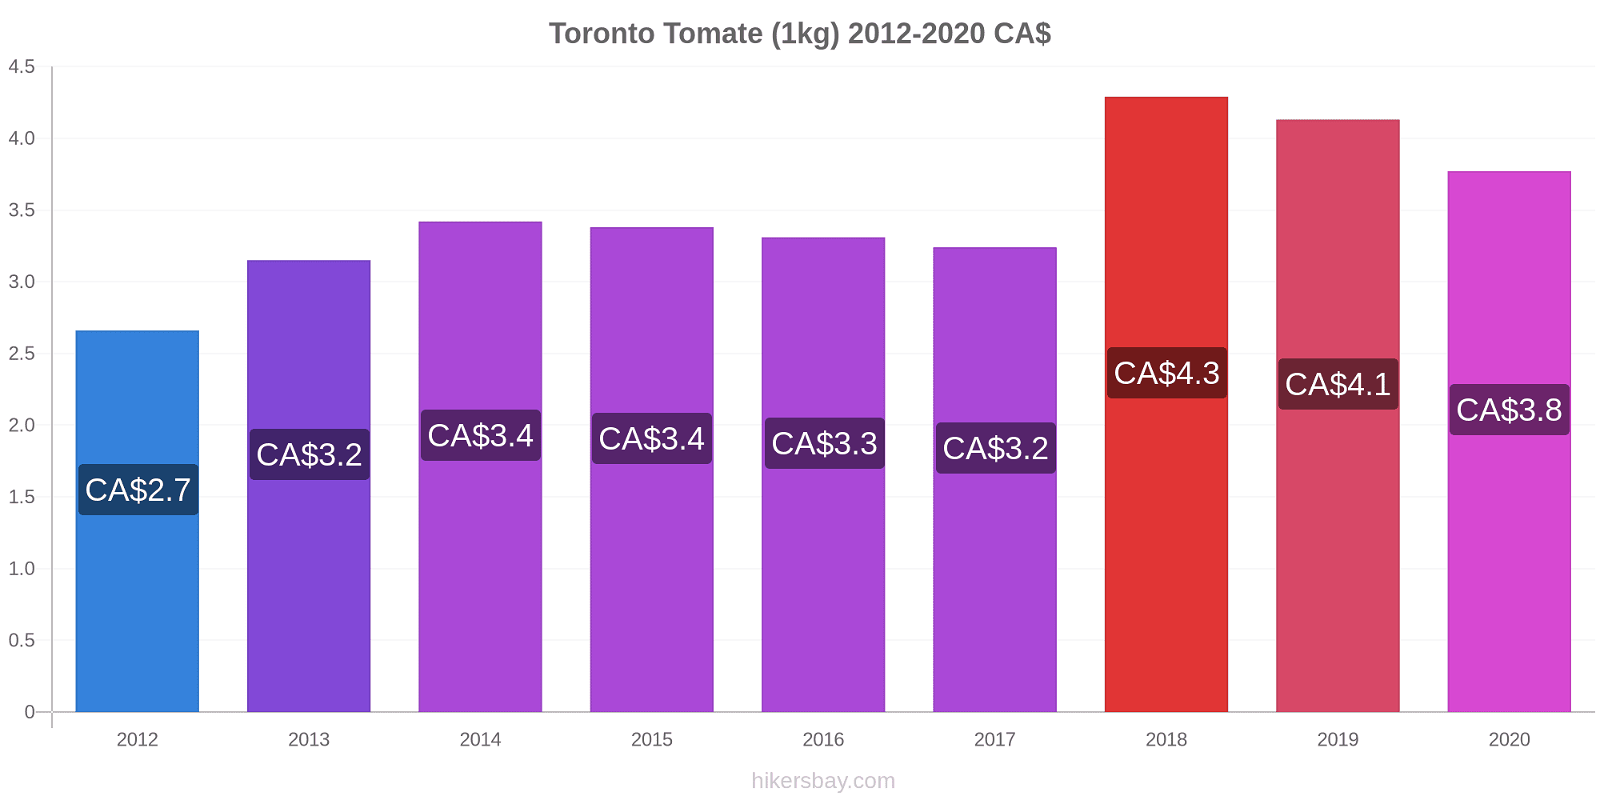 Toronto cambios de precios Tomate (1kg) hikersbay.com